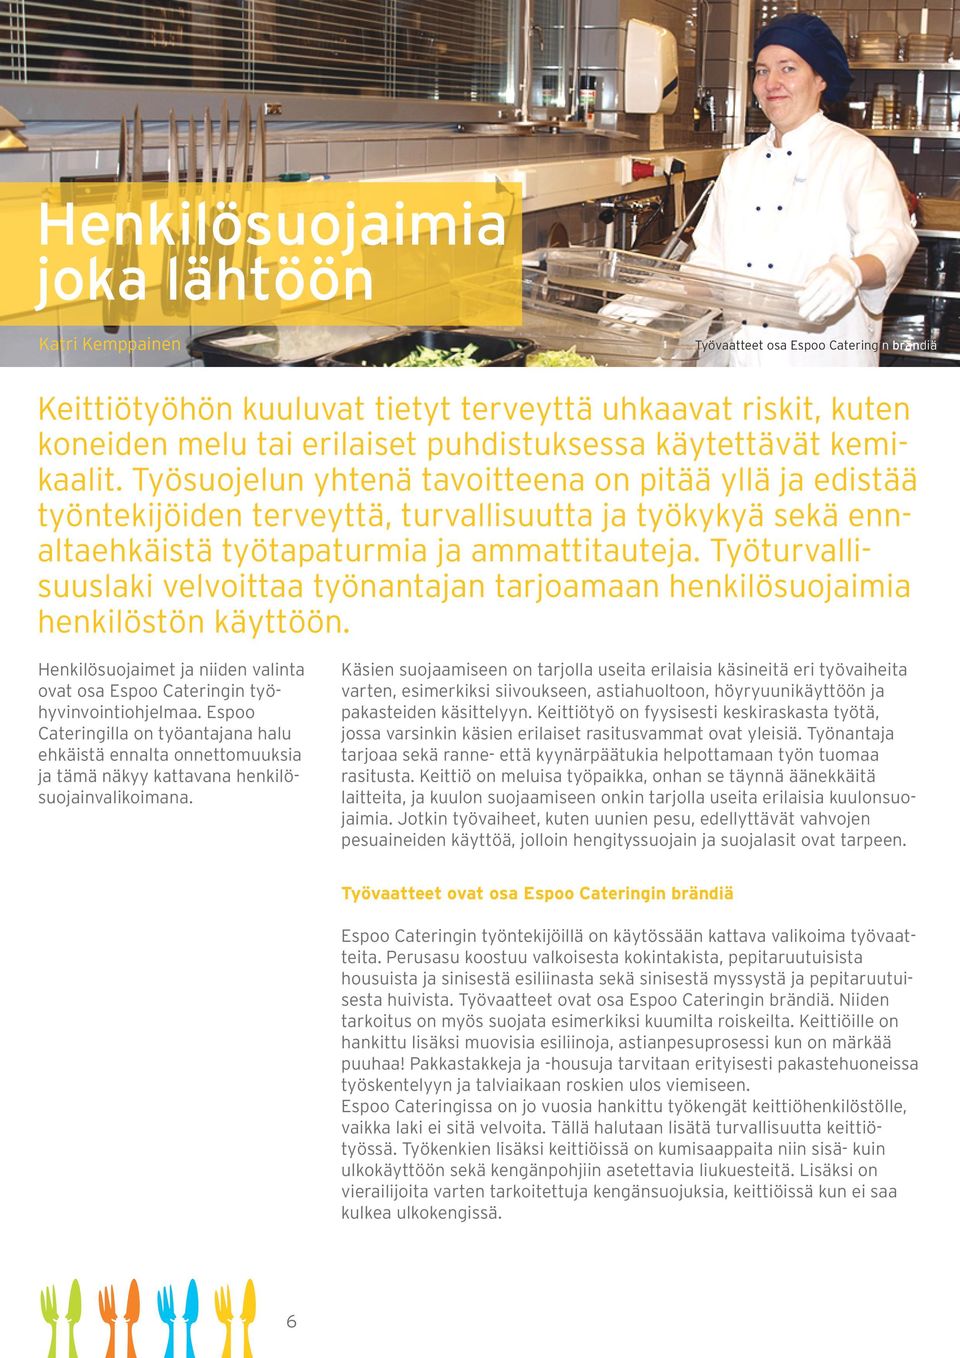 Työturvallisuuslaki velvoittaa työnantajan tarjoamaan henkilösuojaimia henkilöstön käyttöön. Henkilösuojaimet ja niiden valinta ovat osa Espoo Cateringin työhyvinvointiohjelmaa.